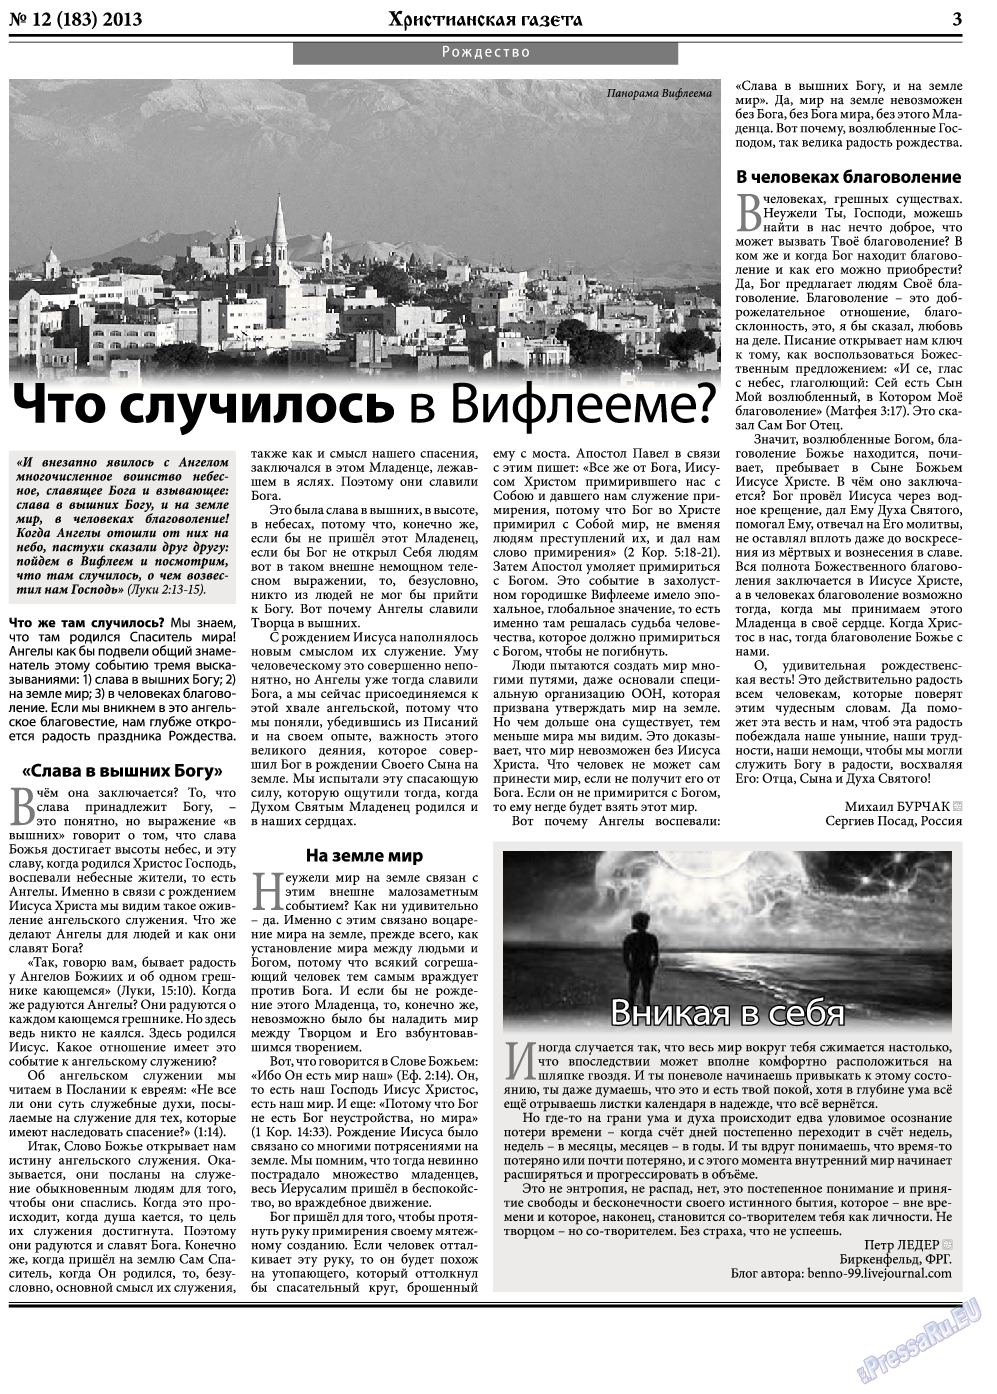 Христианская газета, газета. 2013 №12 стр.3